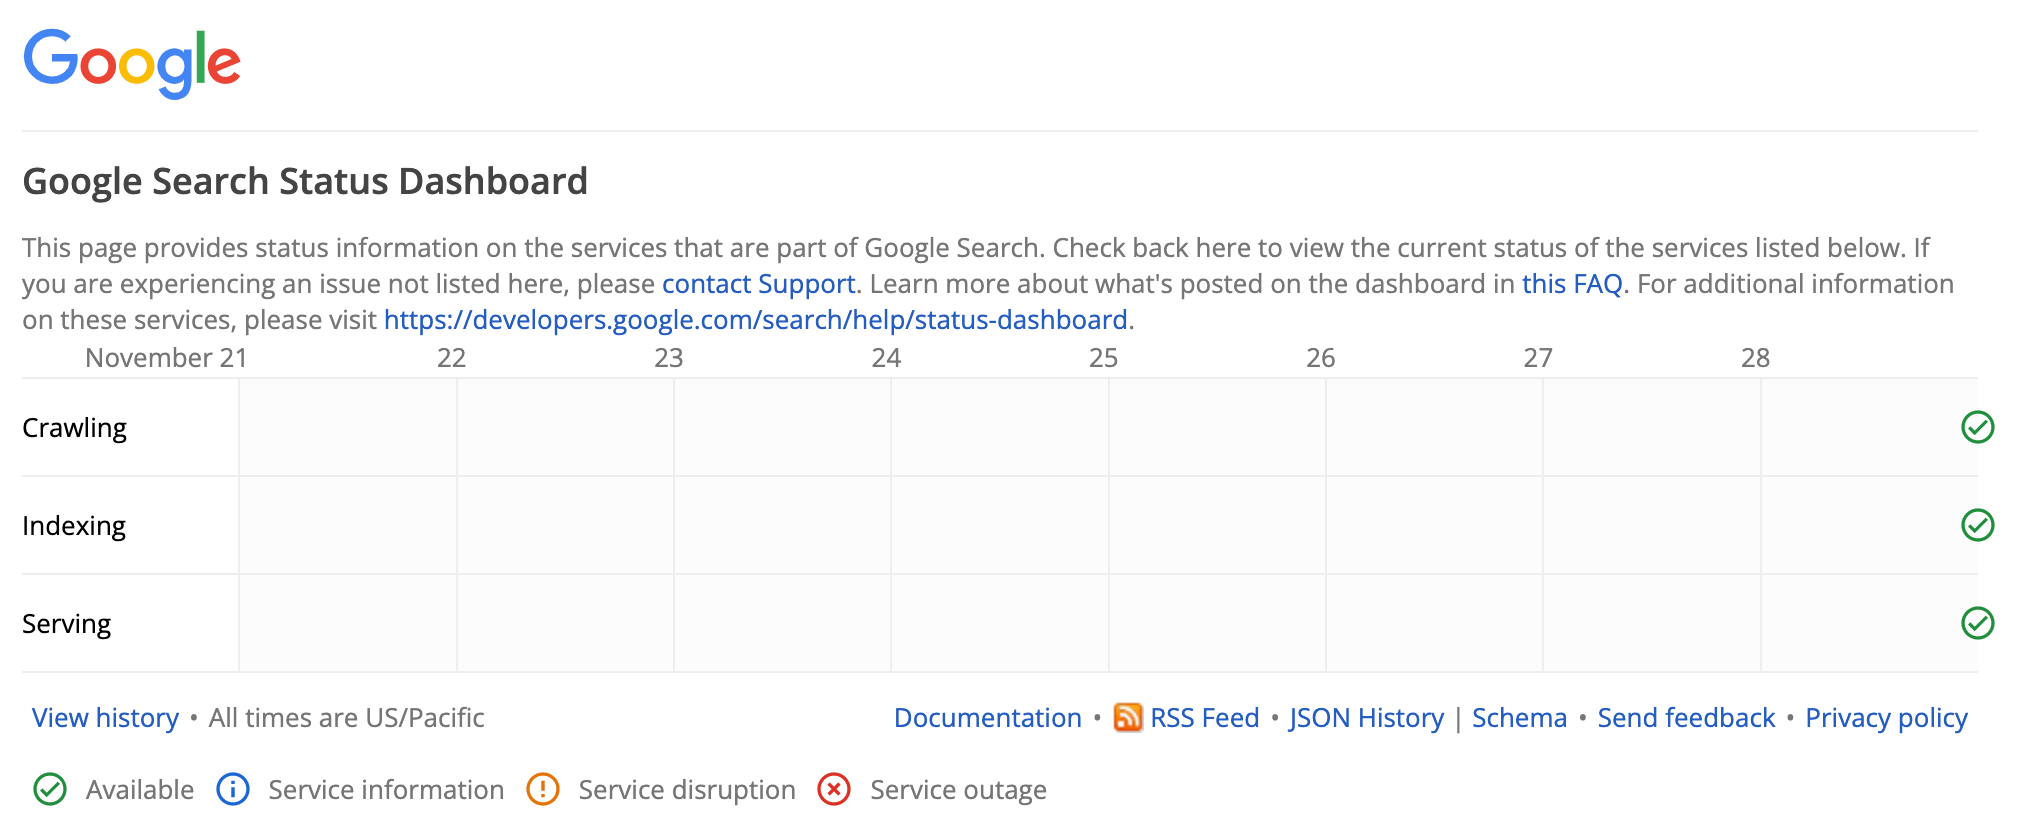 Trang tổng quan về Trạng thái của Google Tìm kiếm không cho thấy vấn đề nào đang diễn ra